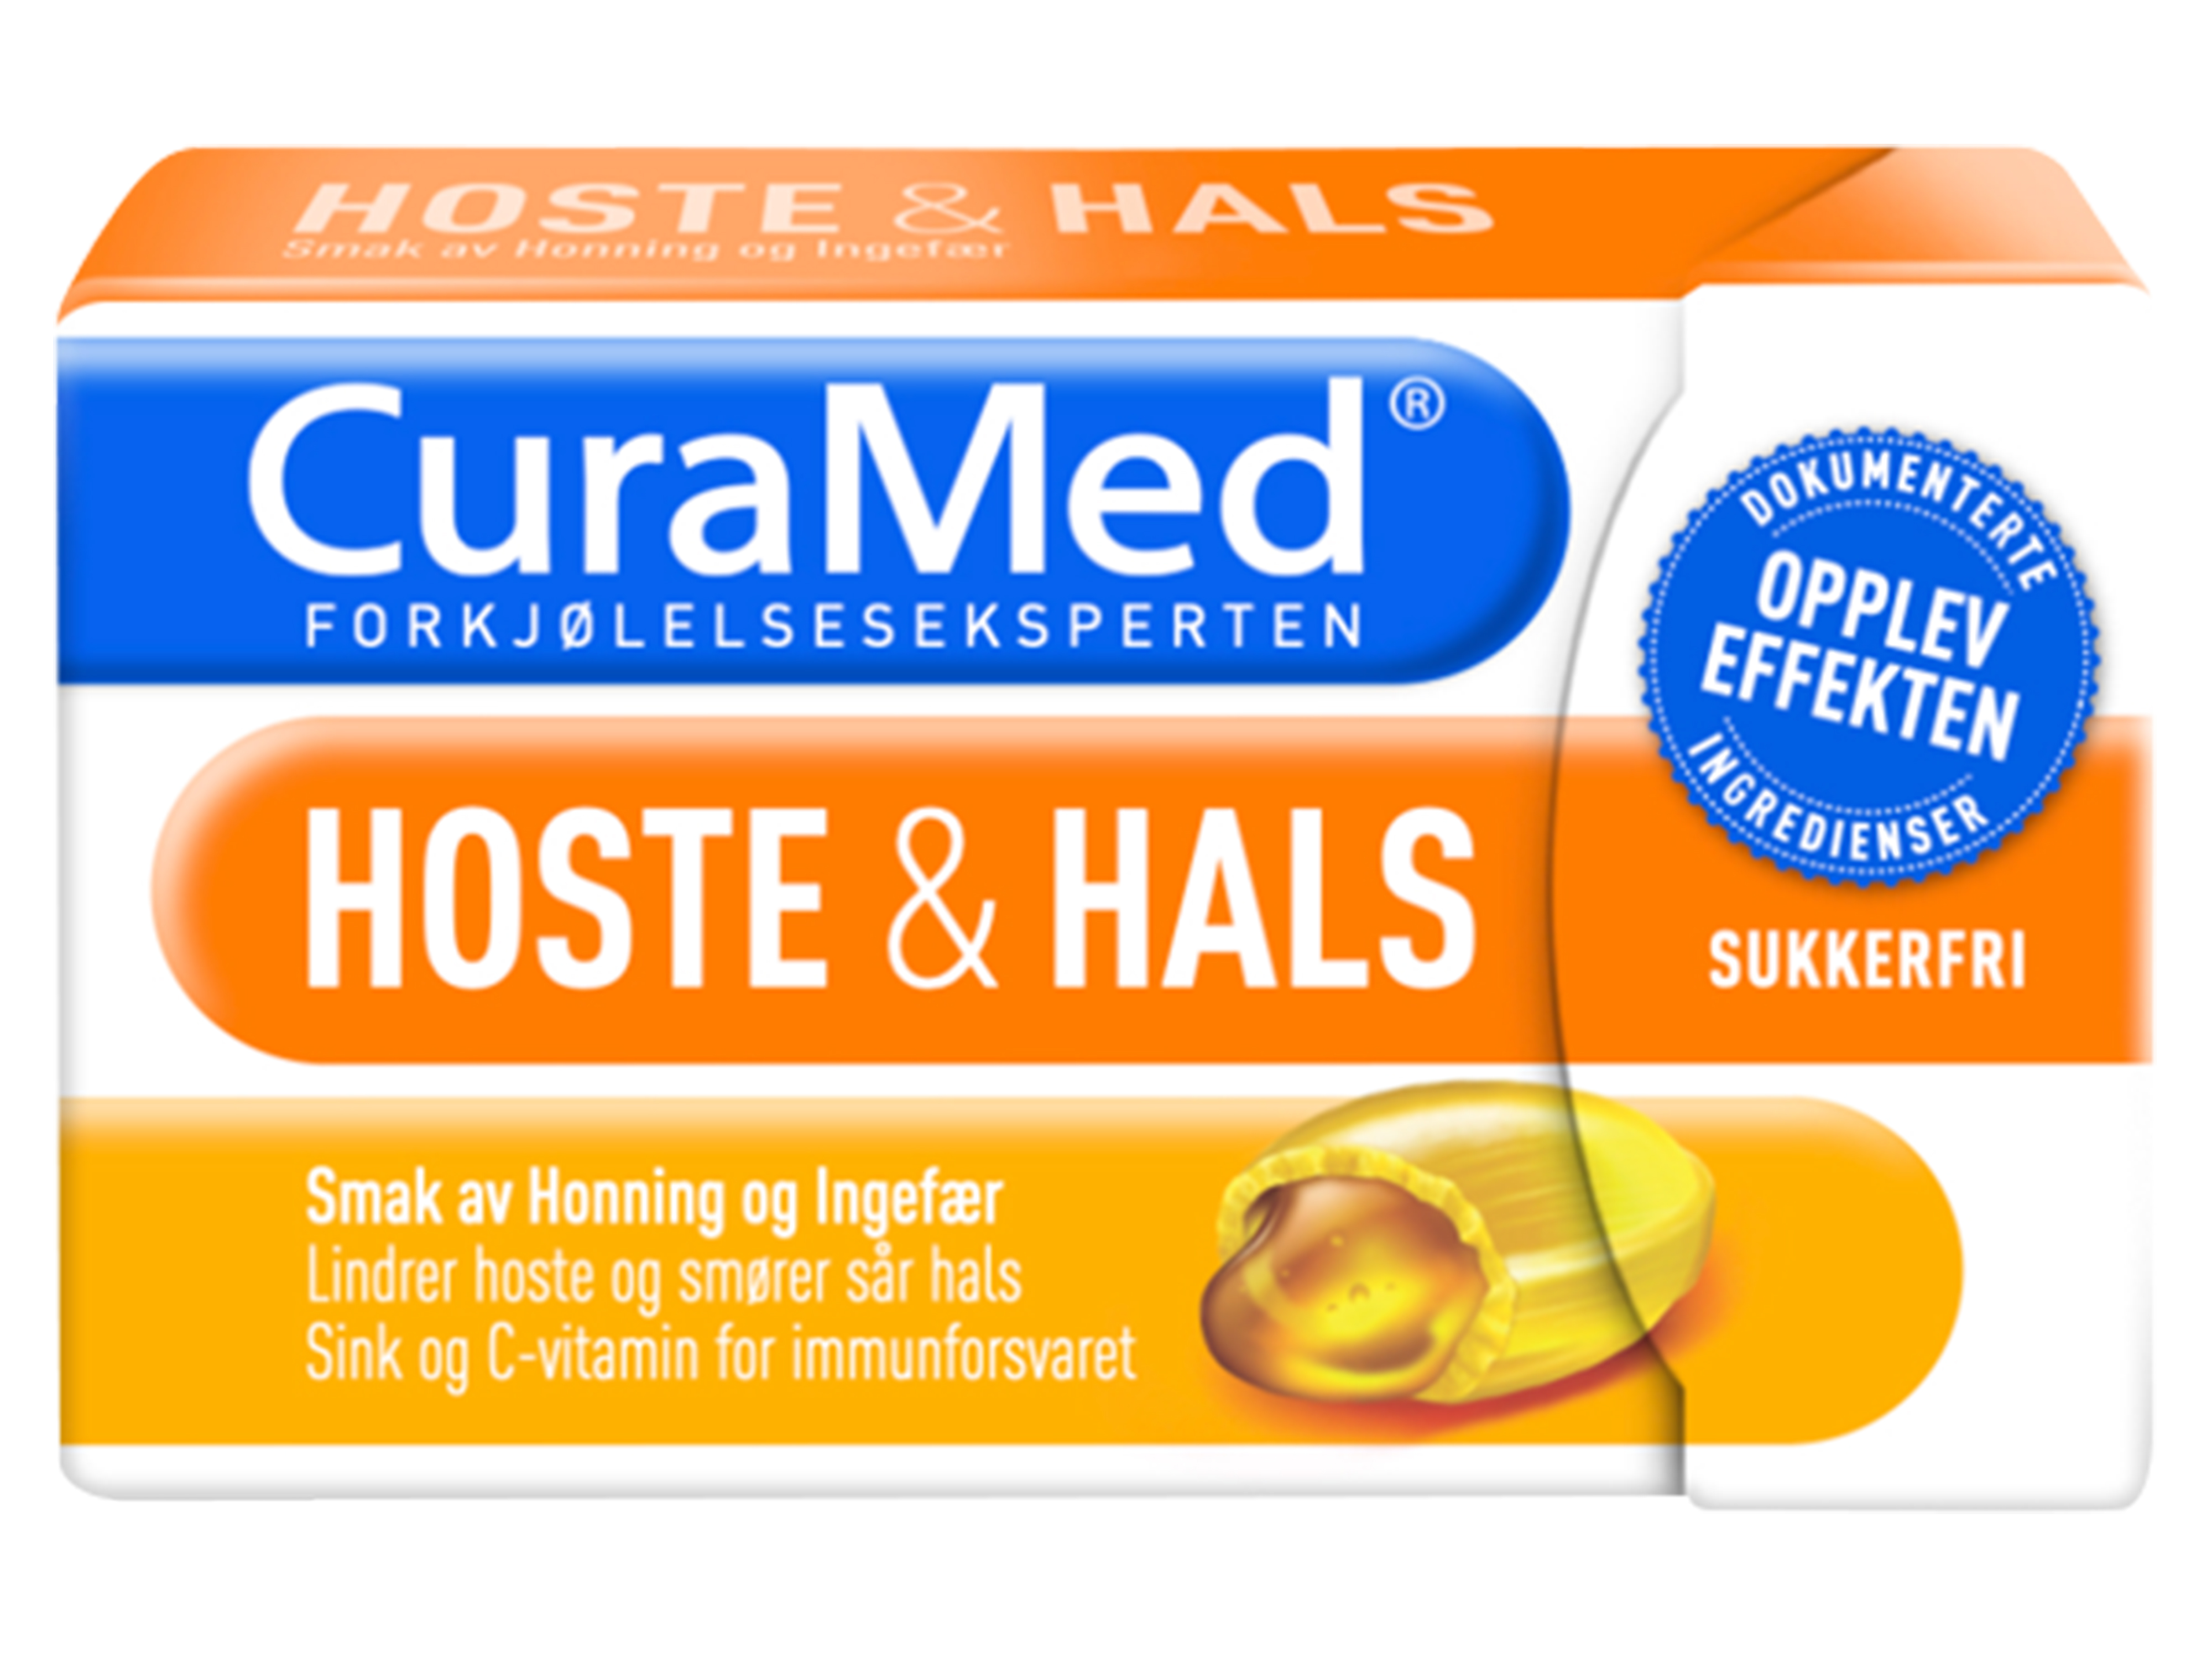 Curamed Hoste & Hals Honning & Ingefær, 16 pastiller